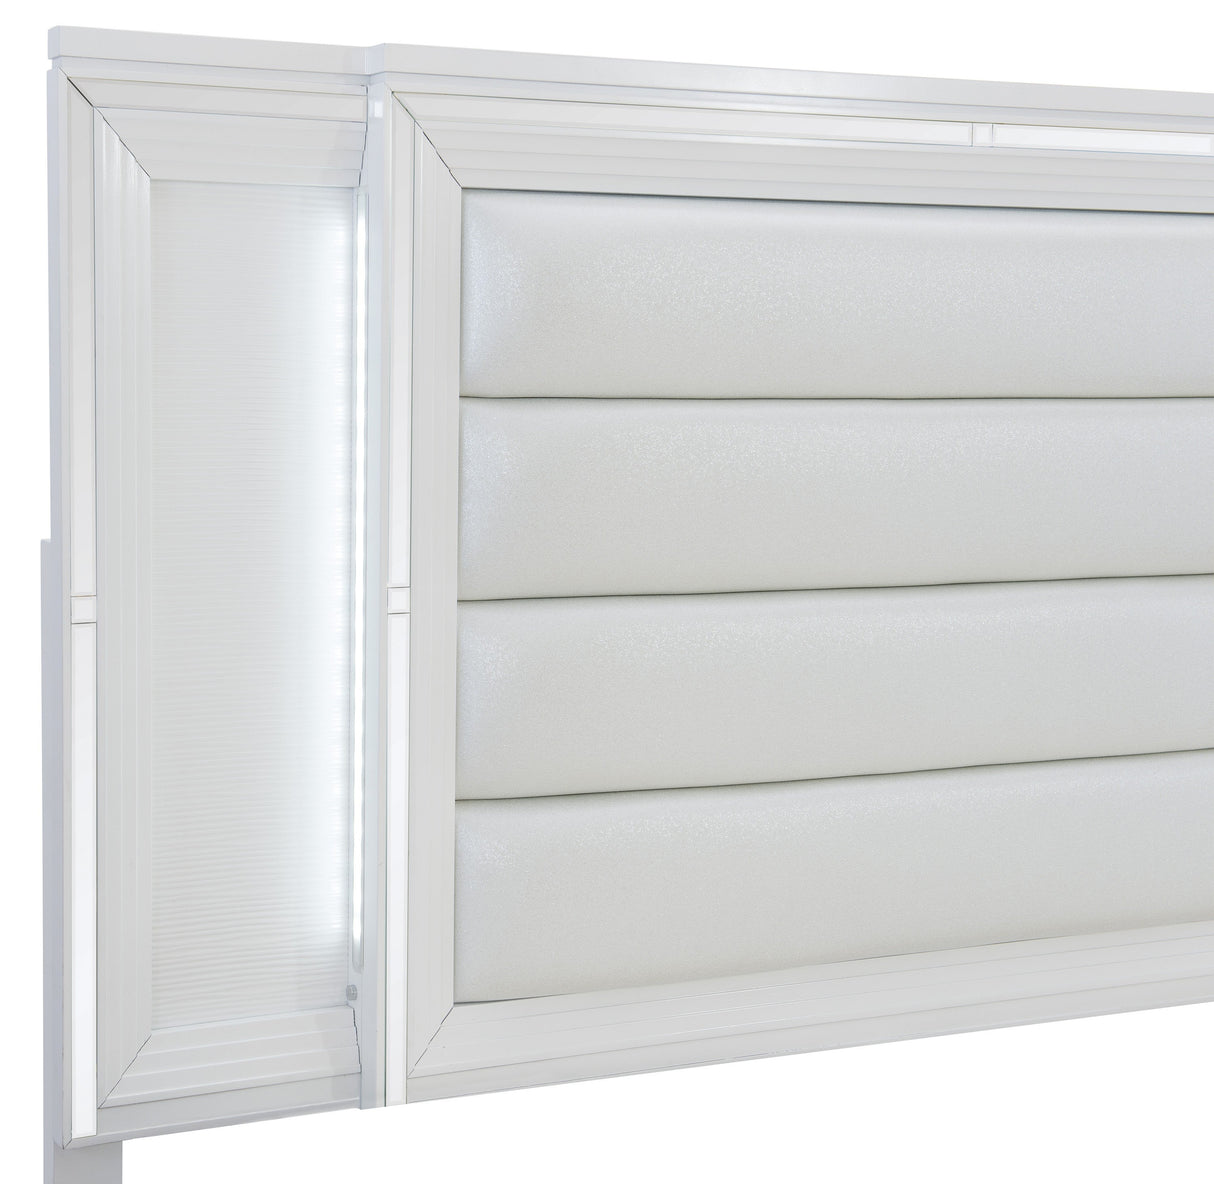 Tamsin White LED Upholstered Storage Platform Bedroom Set